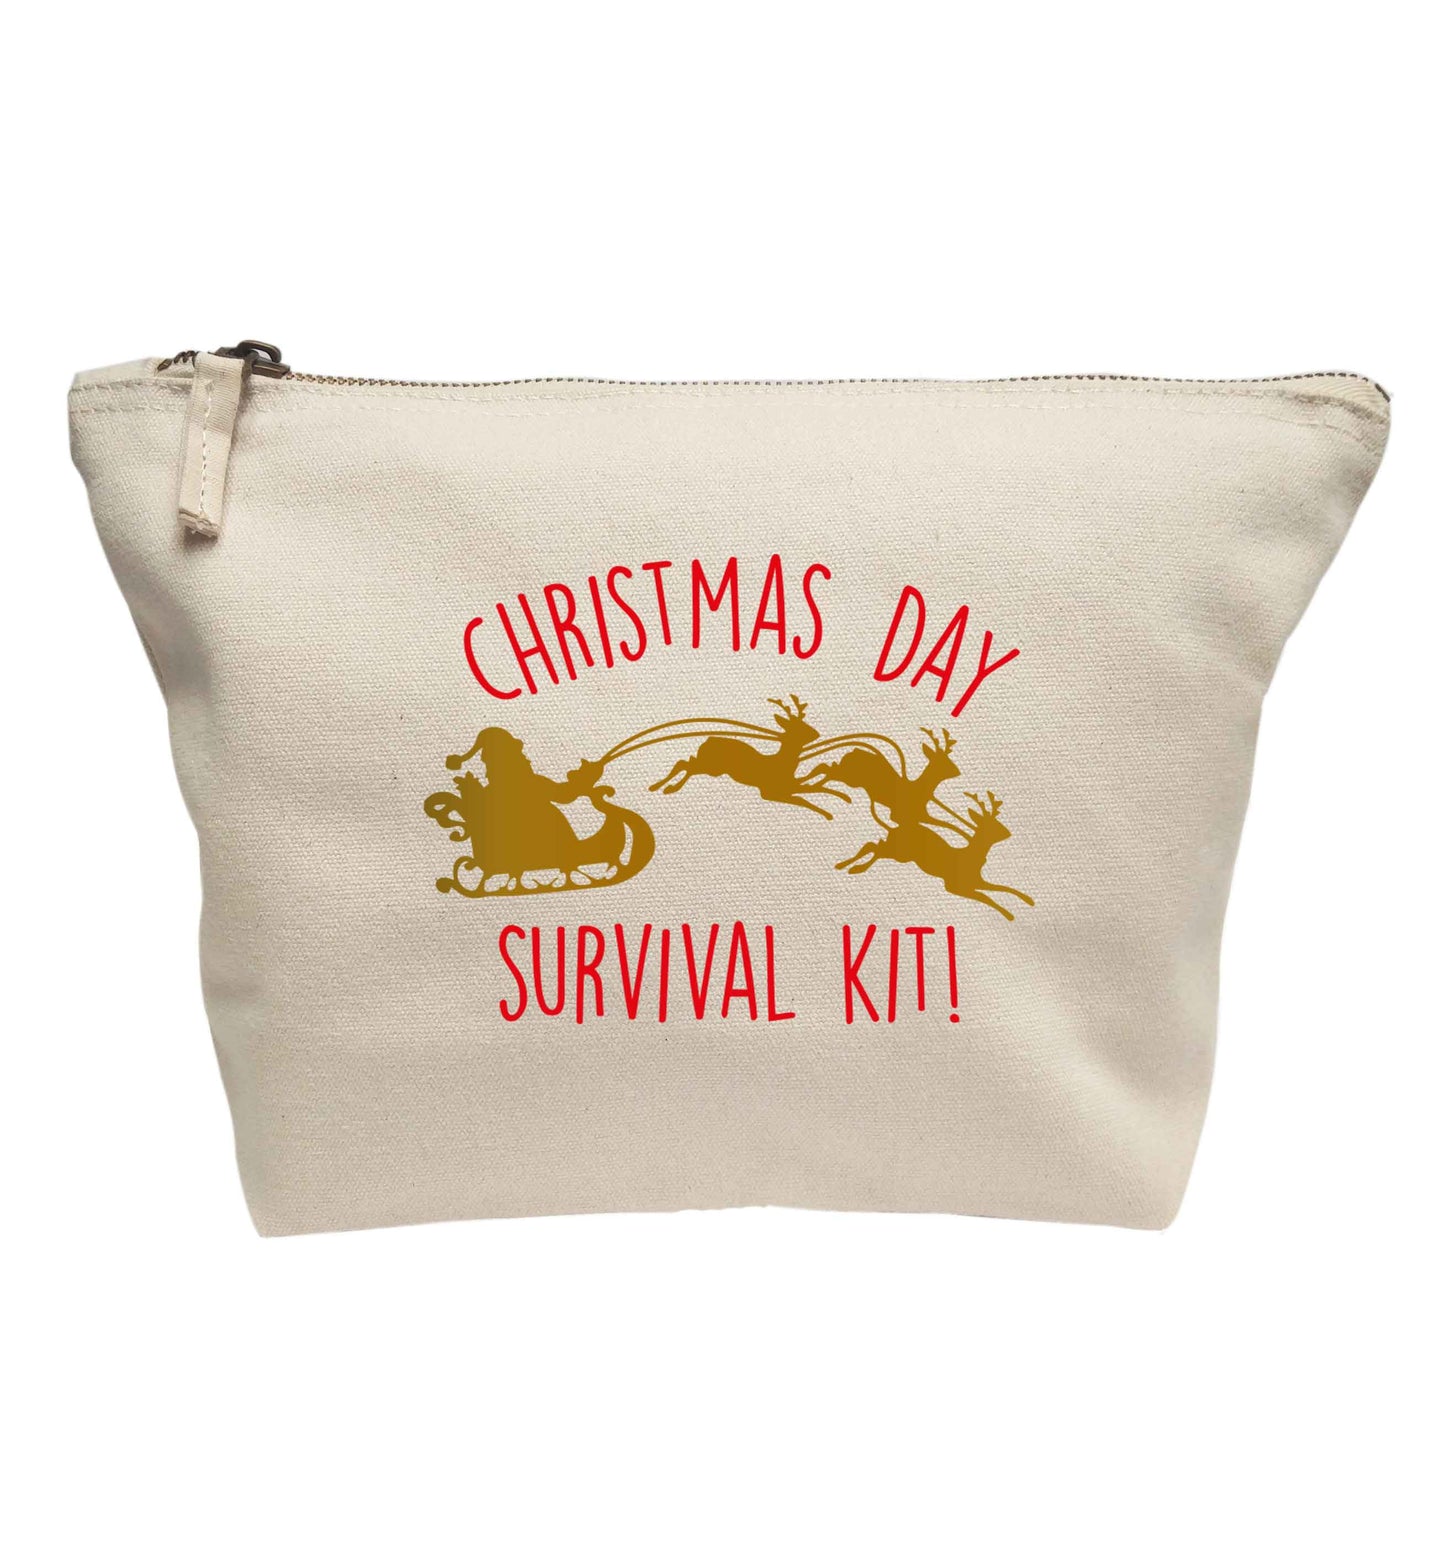 Christmas day survival kit! | Makeup / wash bag